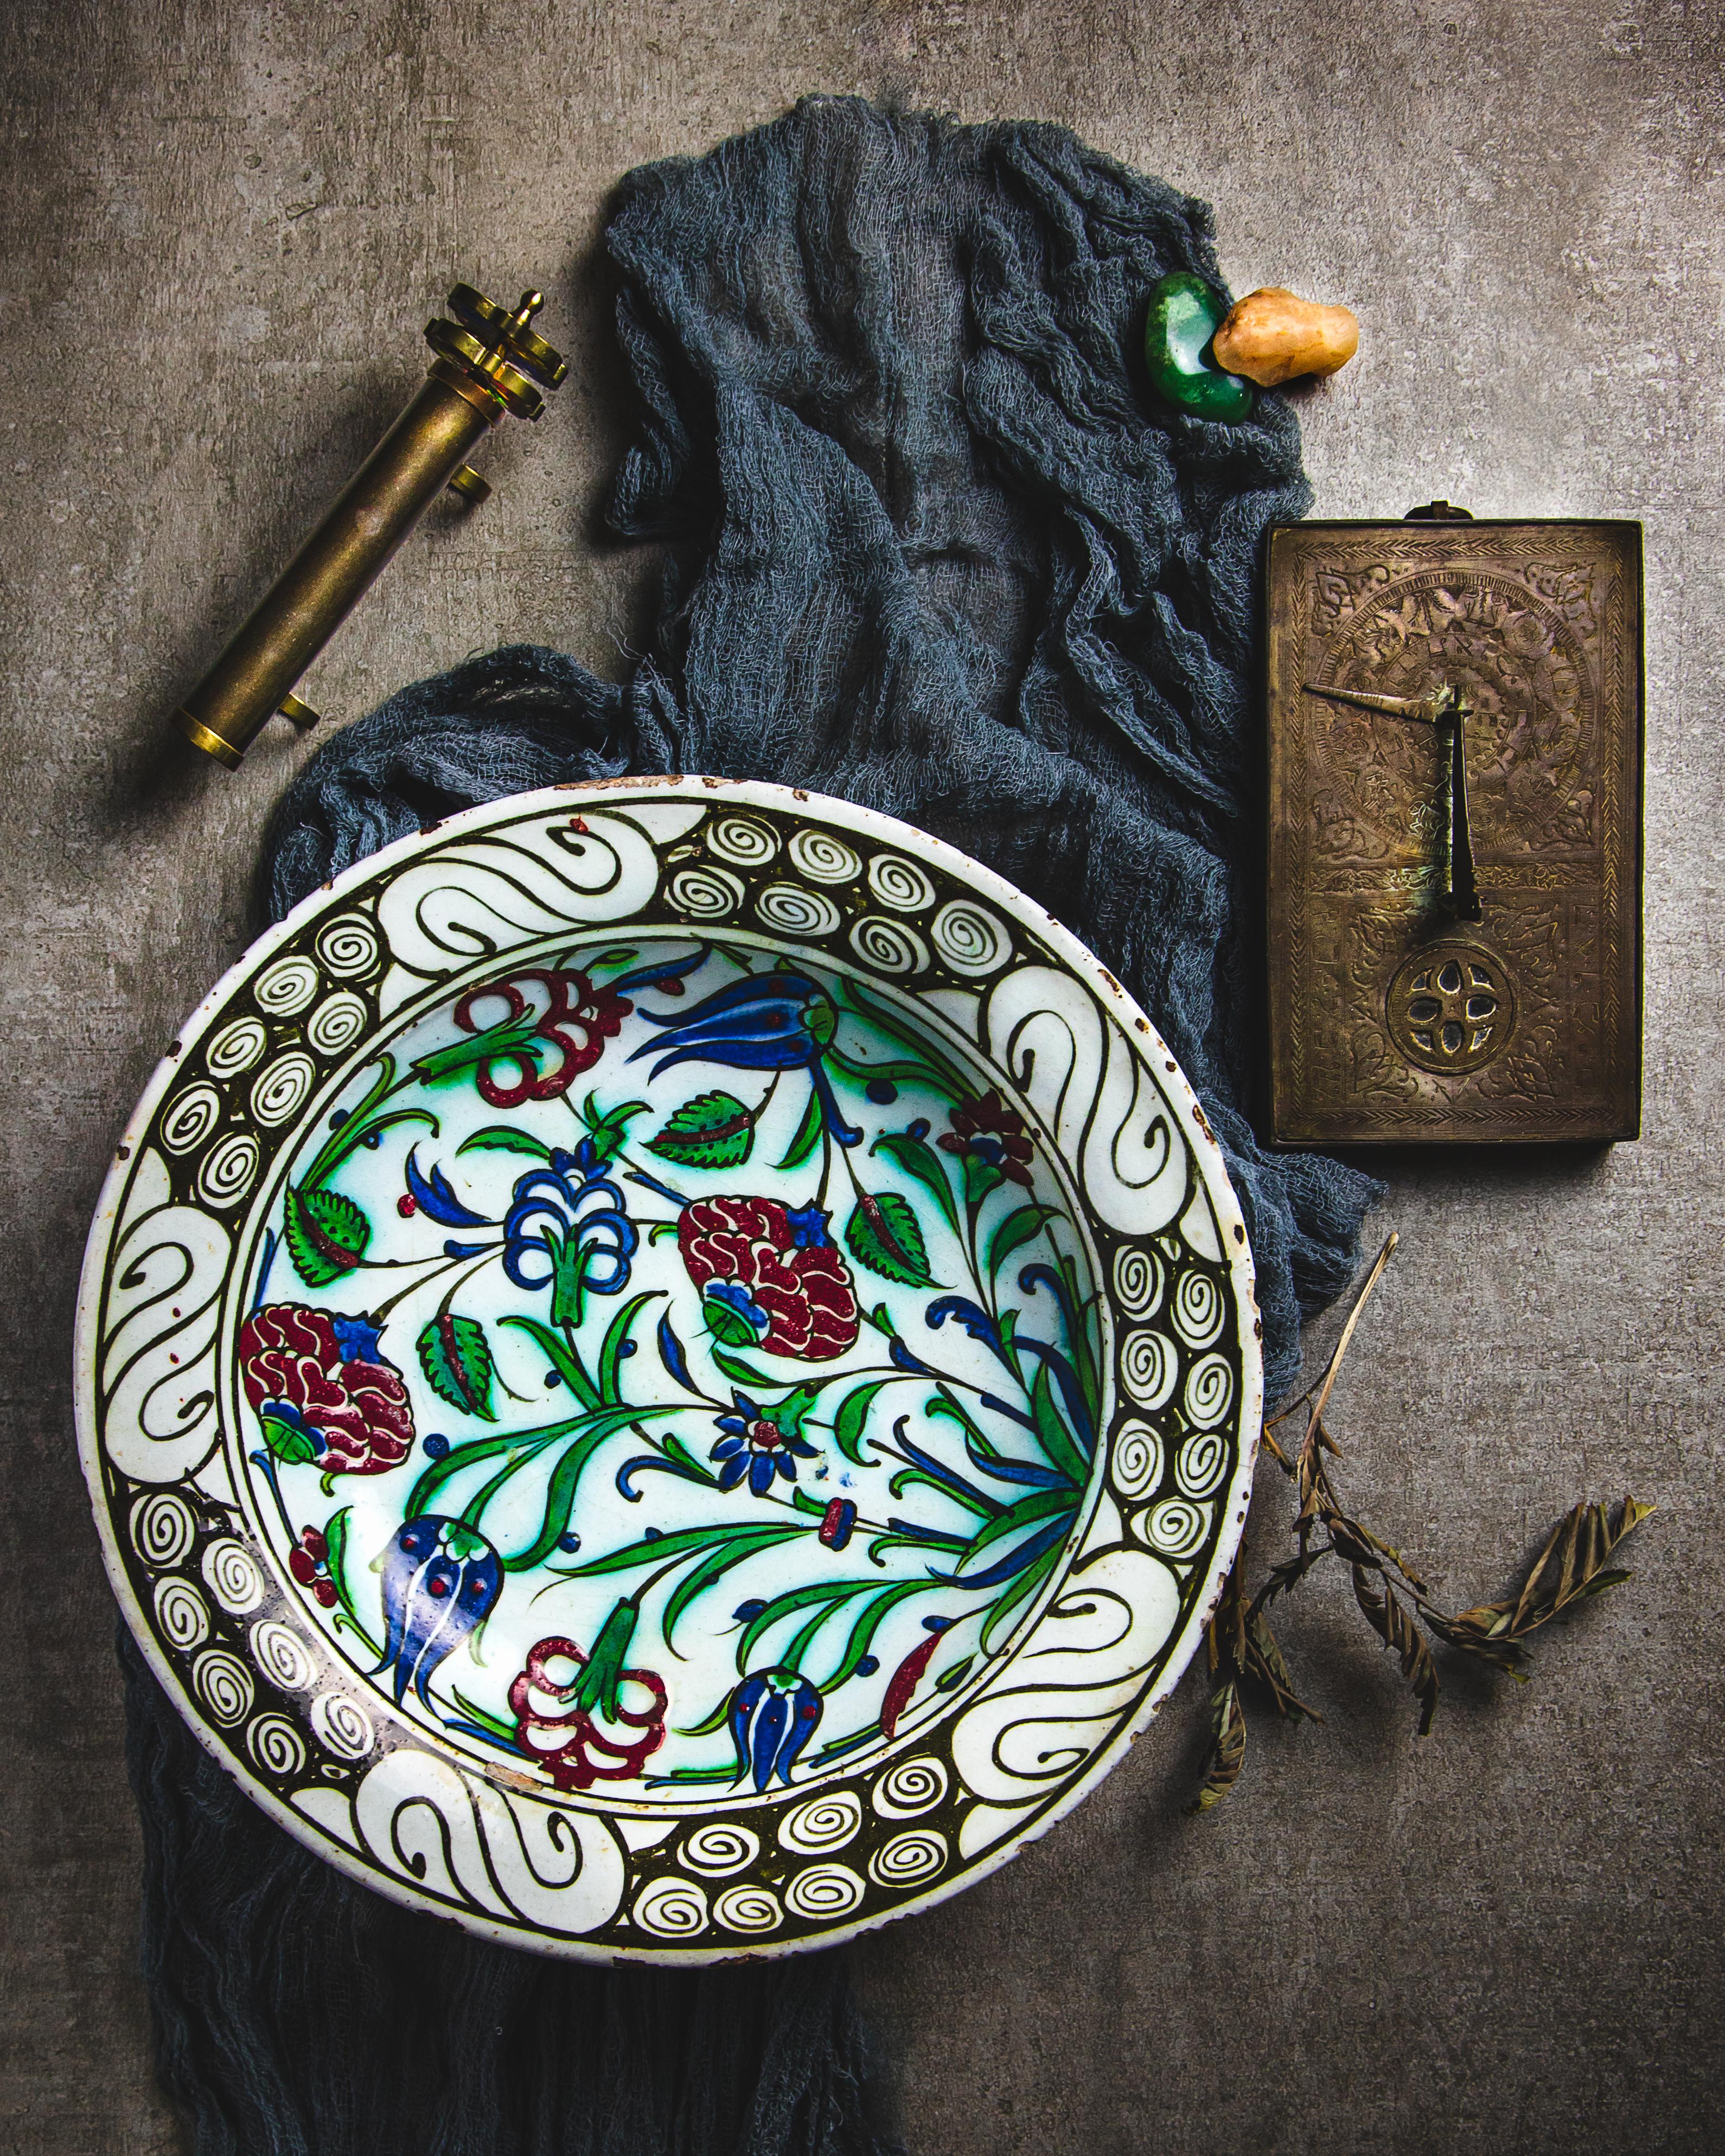 Plat en poterie d'Iznik fabriqué dans la première moitié du XVIIe siècle et décoré de chrysanthèmes et de tulipes. Le bord est orné d'un motif de rochers et de vagues.

Sous la Direction des sultans ottomans, les céramiques d'Iznik mêlent